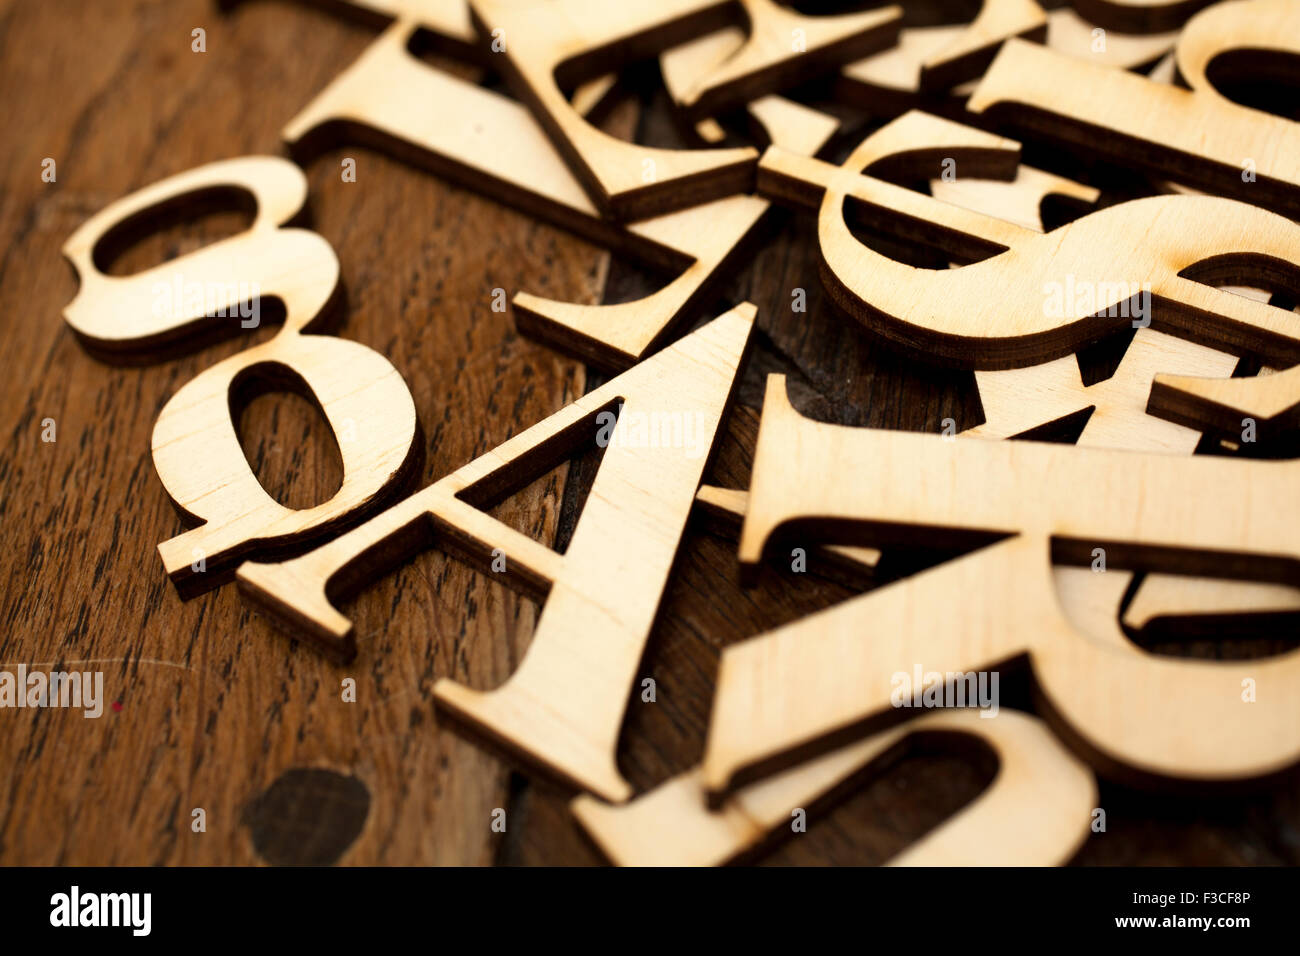 Alfabeto di legno lettere sulla vecchia superficie di legno con lo spazio per il tuo testo. Foto Stock